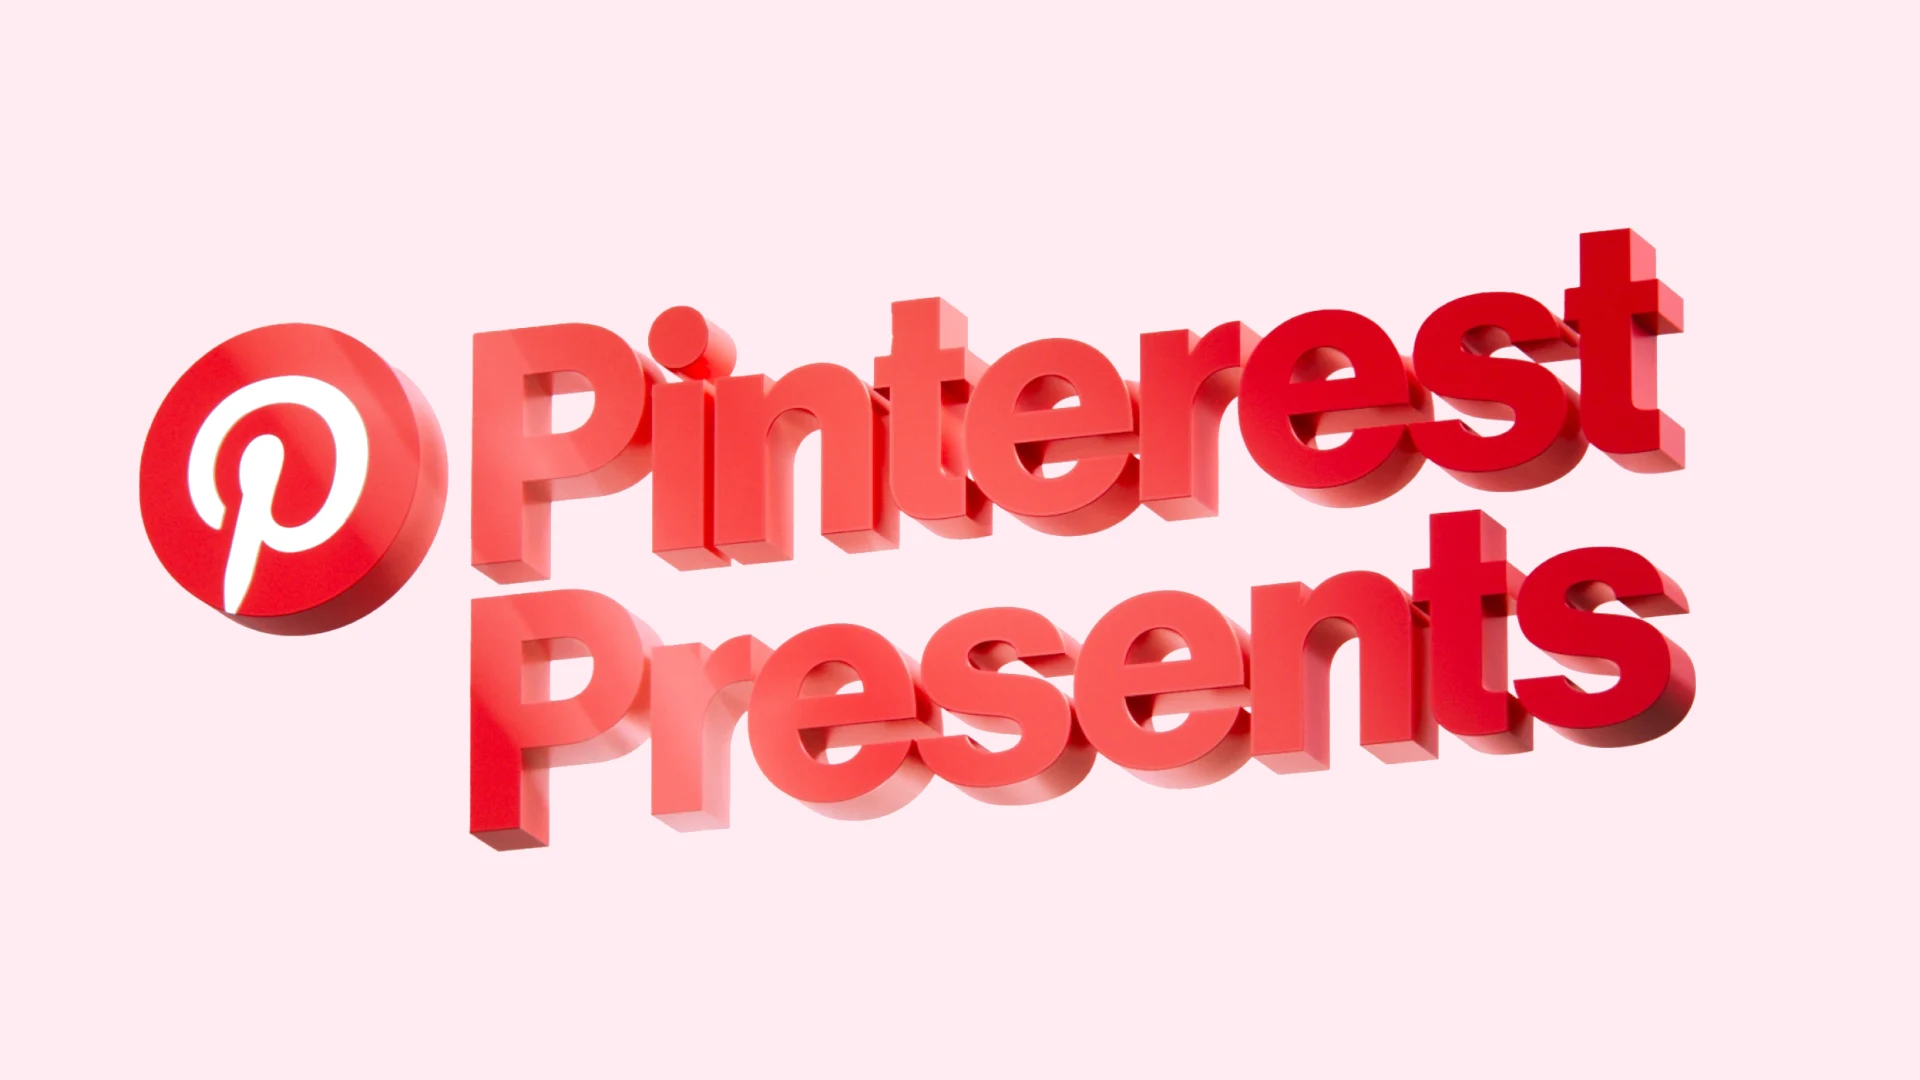 Un logotipo en 3D de Pinterest Presents